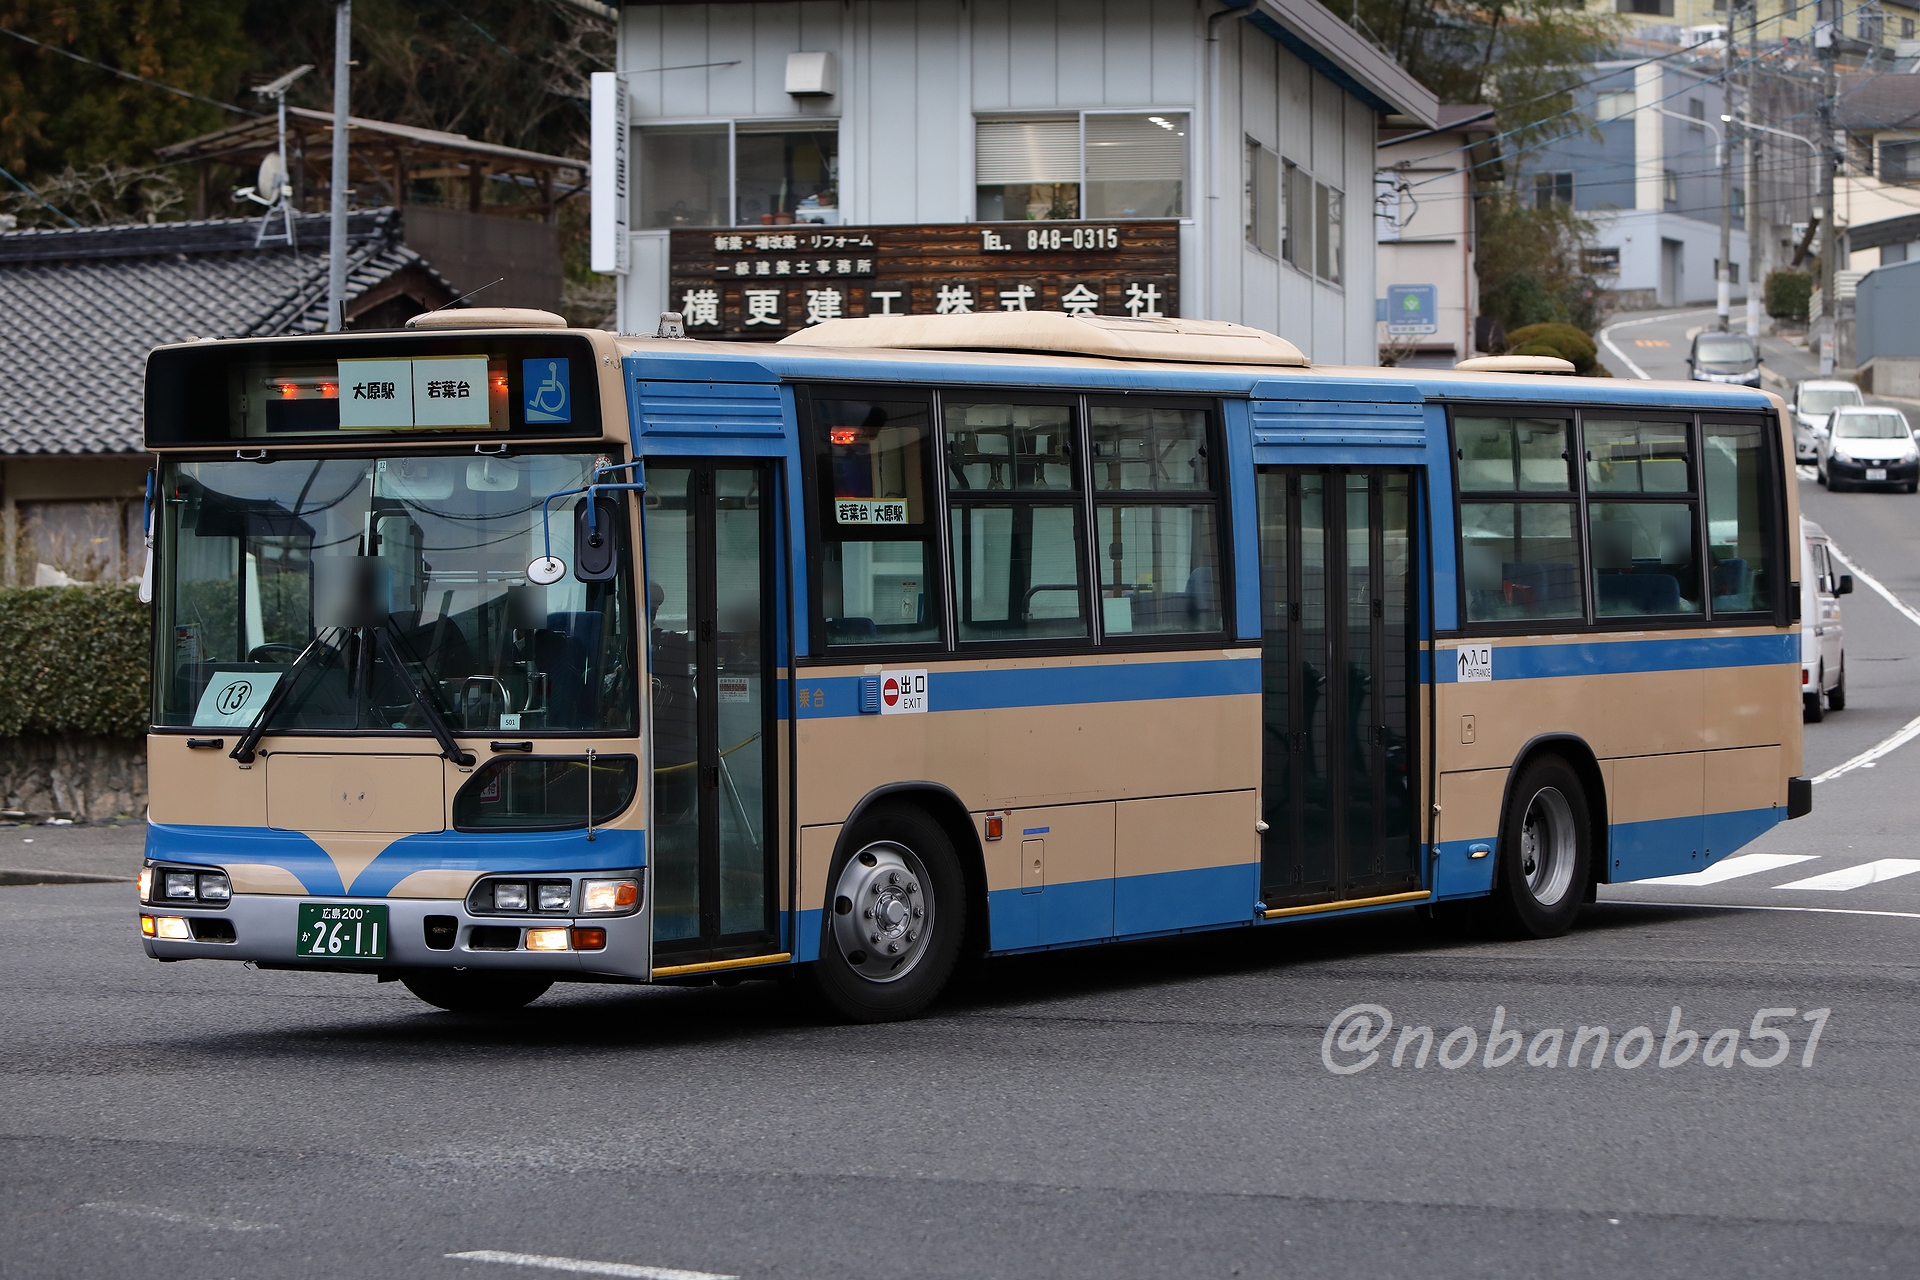 تويتر のばのば على تويتر 2 10 フォーブル 元横浜市営バス 横浜市営バス に在籍していたブルーリボンシティがいるとのことで 広島へ 横浜市営カラーはそのままで オリジナルにほぼ近い姿です 方向幕やled表示器は 取り付けられていない状態で運用されてい